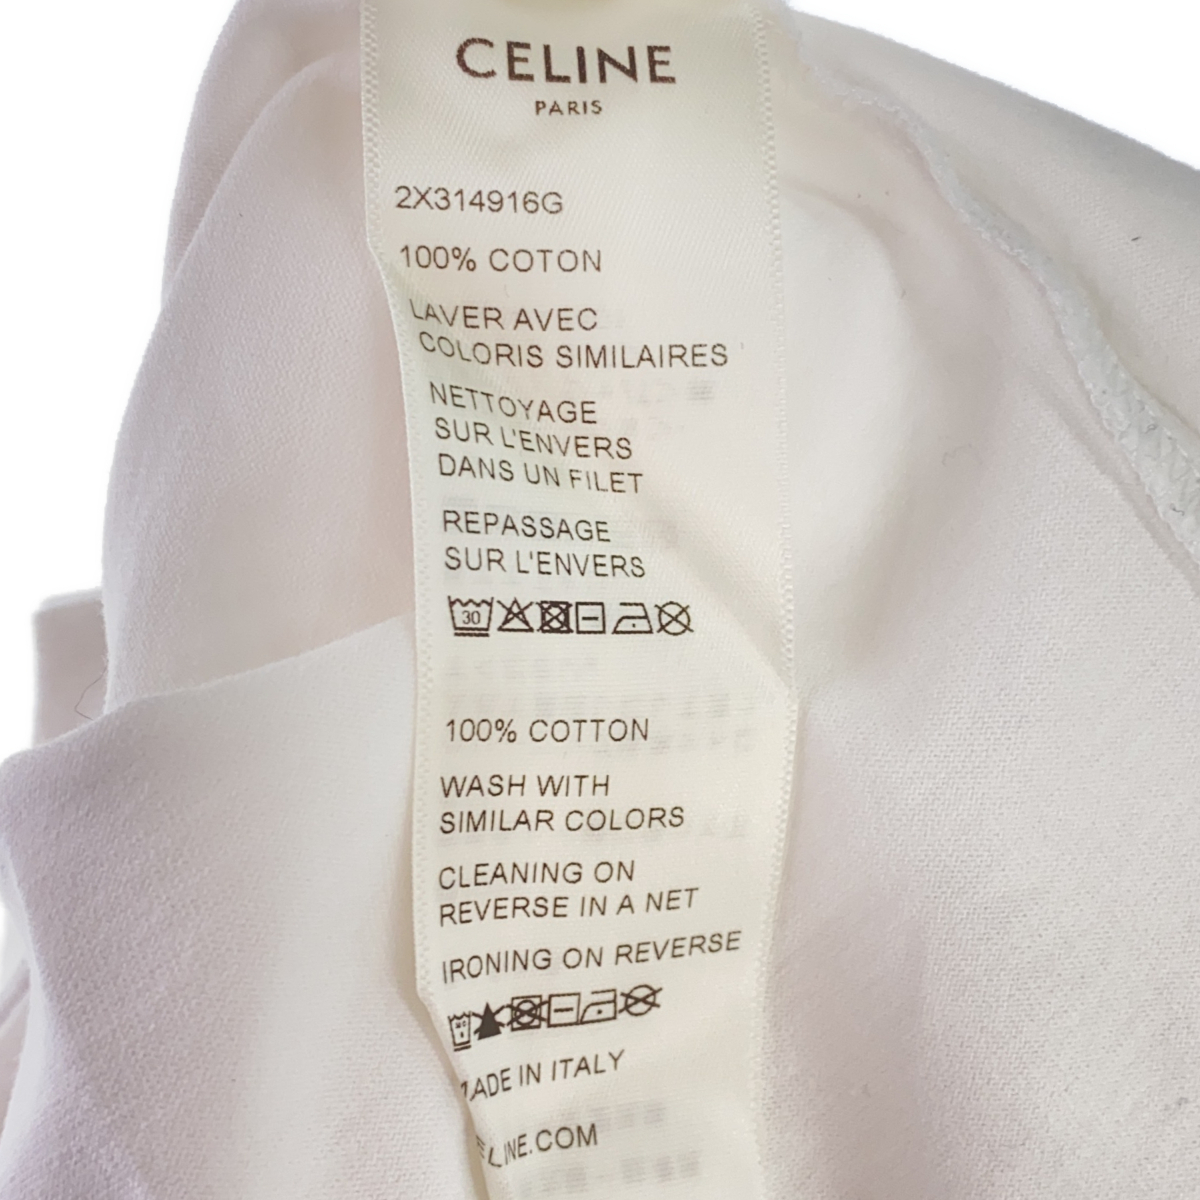 CELINE セリーヌ ロゴ Tシャツ 白 ホワイト 2X314916G ブランド アパレル レディース Lサイズ 服_画像3